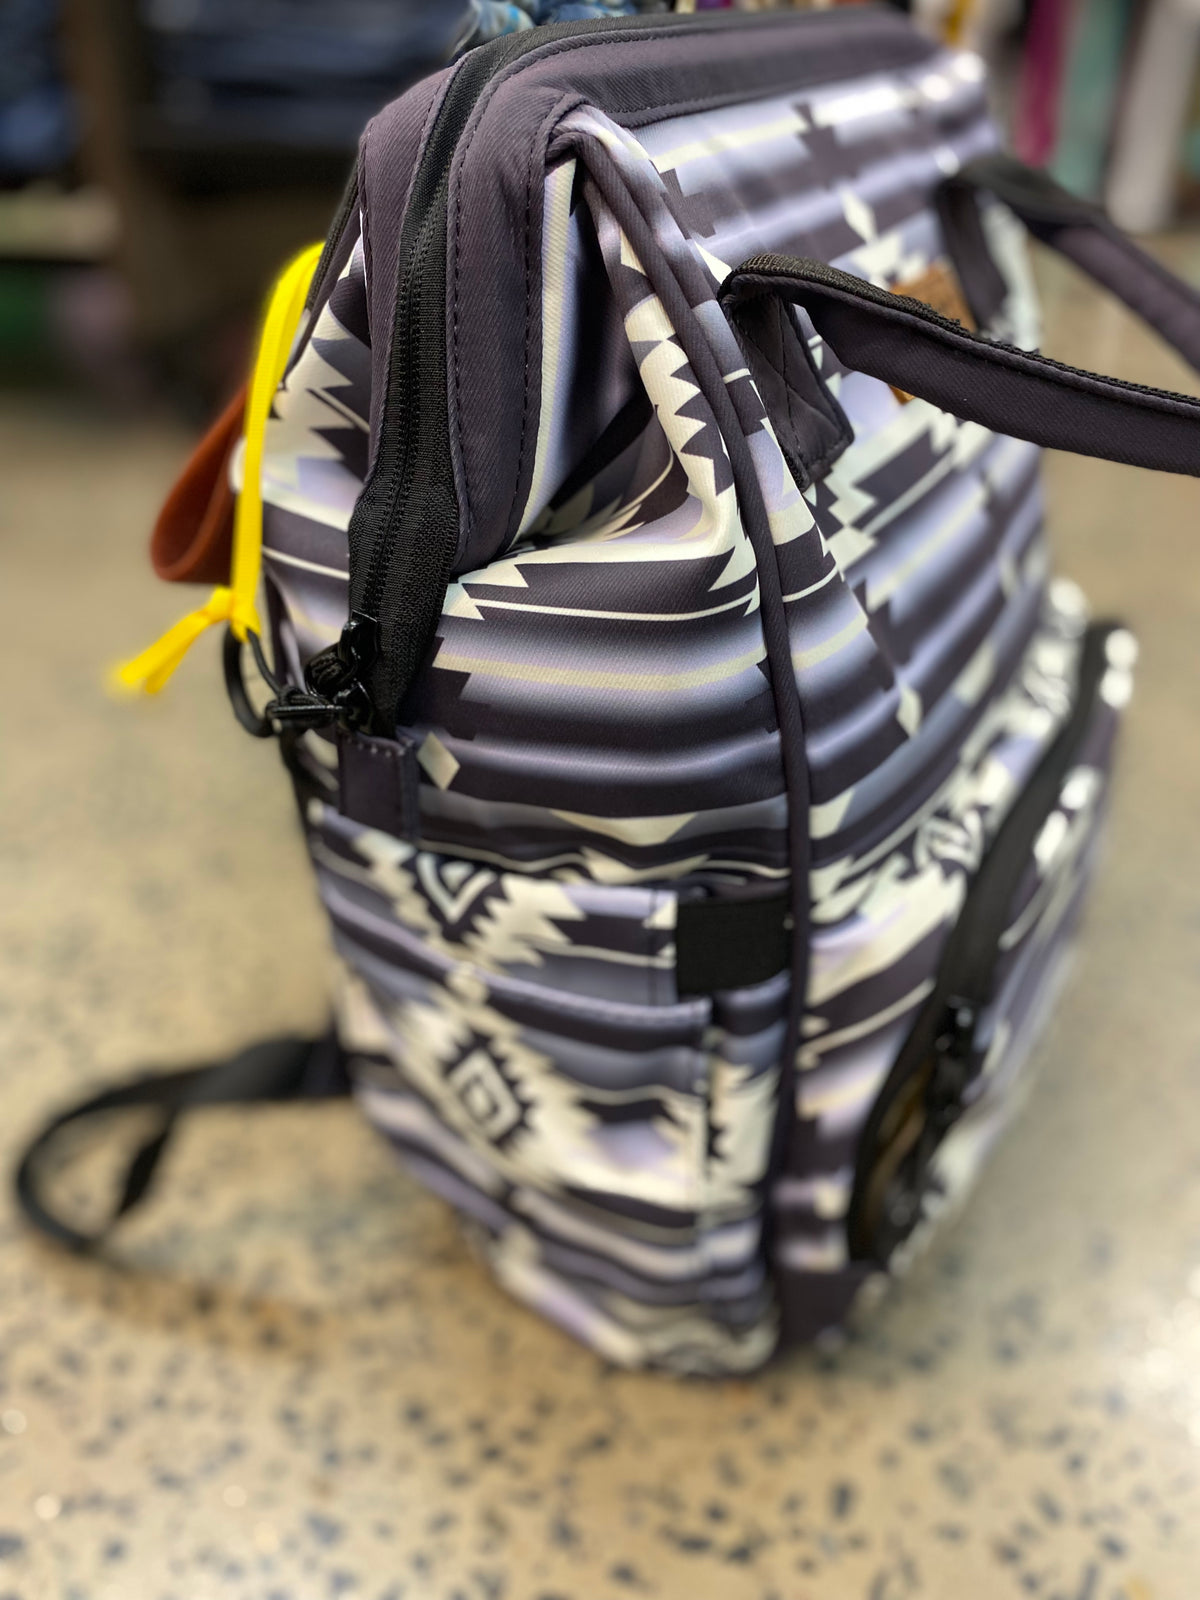 Wrangler Allover Aztec Dual Sided Backpack (WG2204-9110BK)